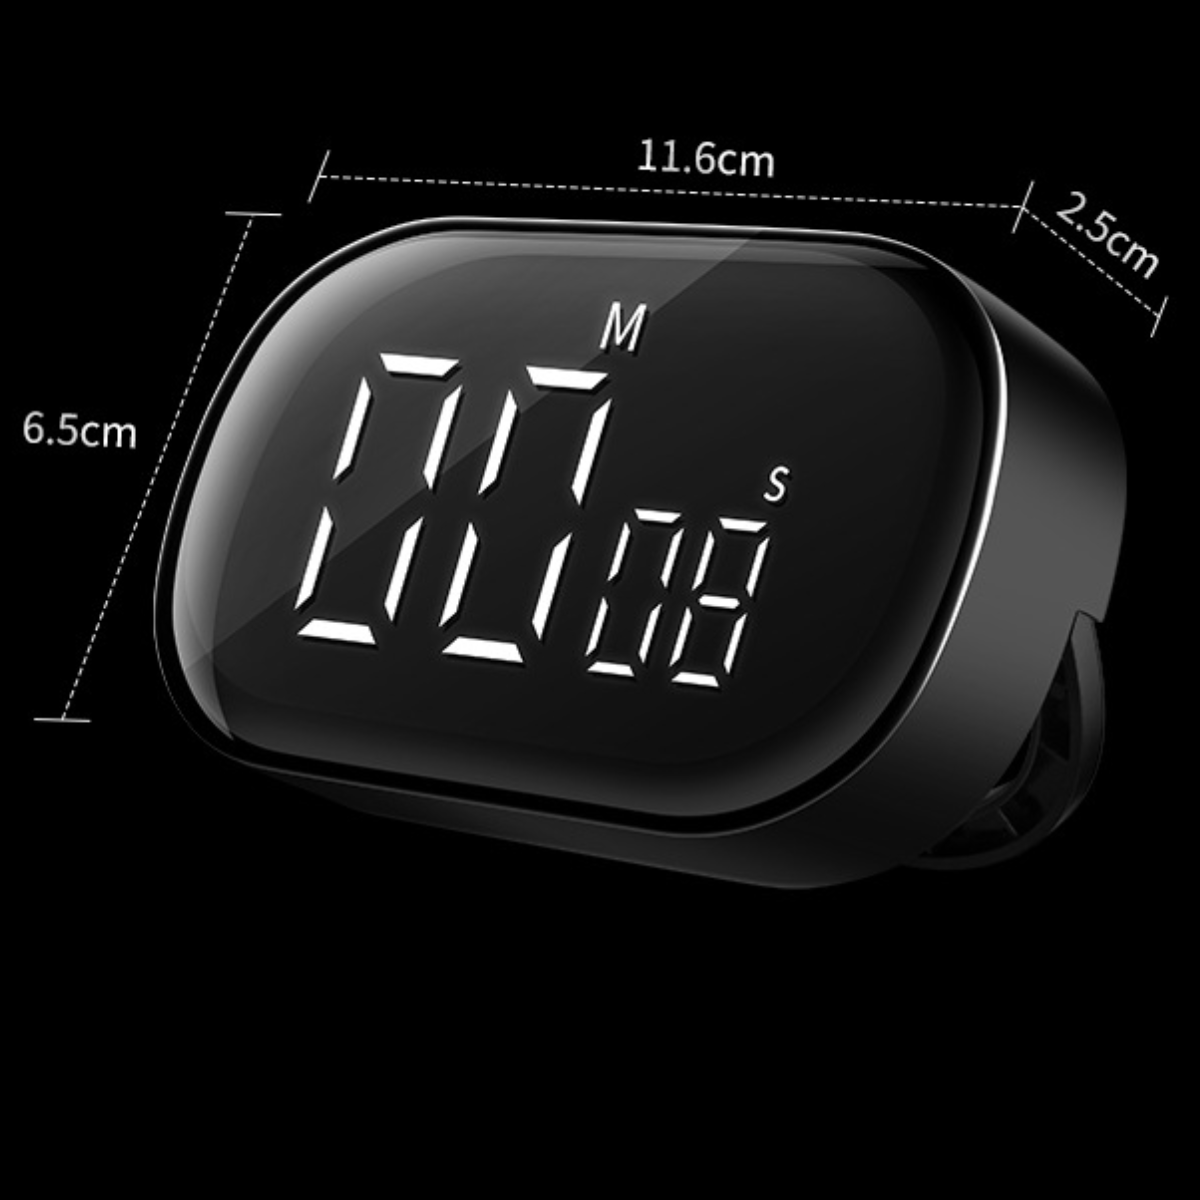 UWOT Magnetische elektronische Zeitschaltuhr:einstellbare Lautstärke, Timer Zeitbereich 00:00-99:59,Schwarz